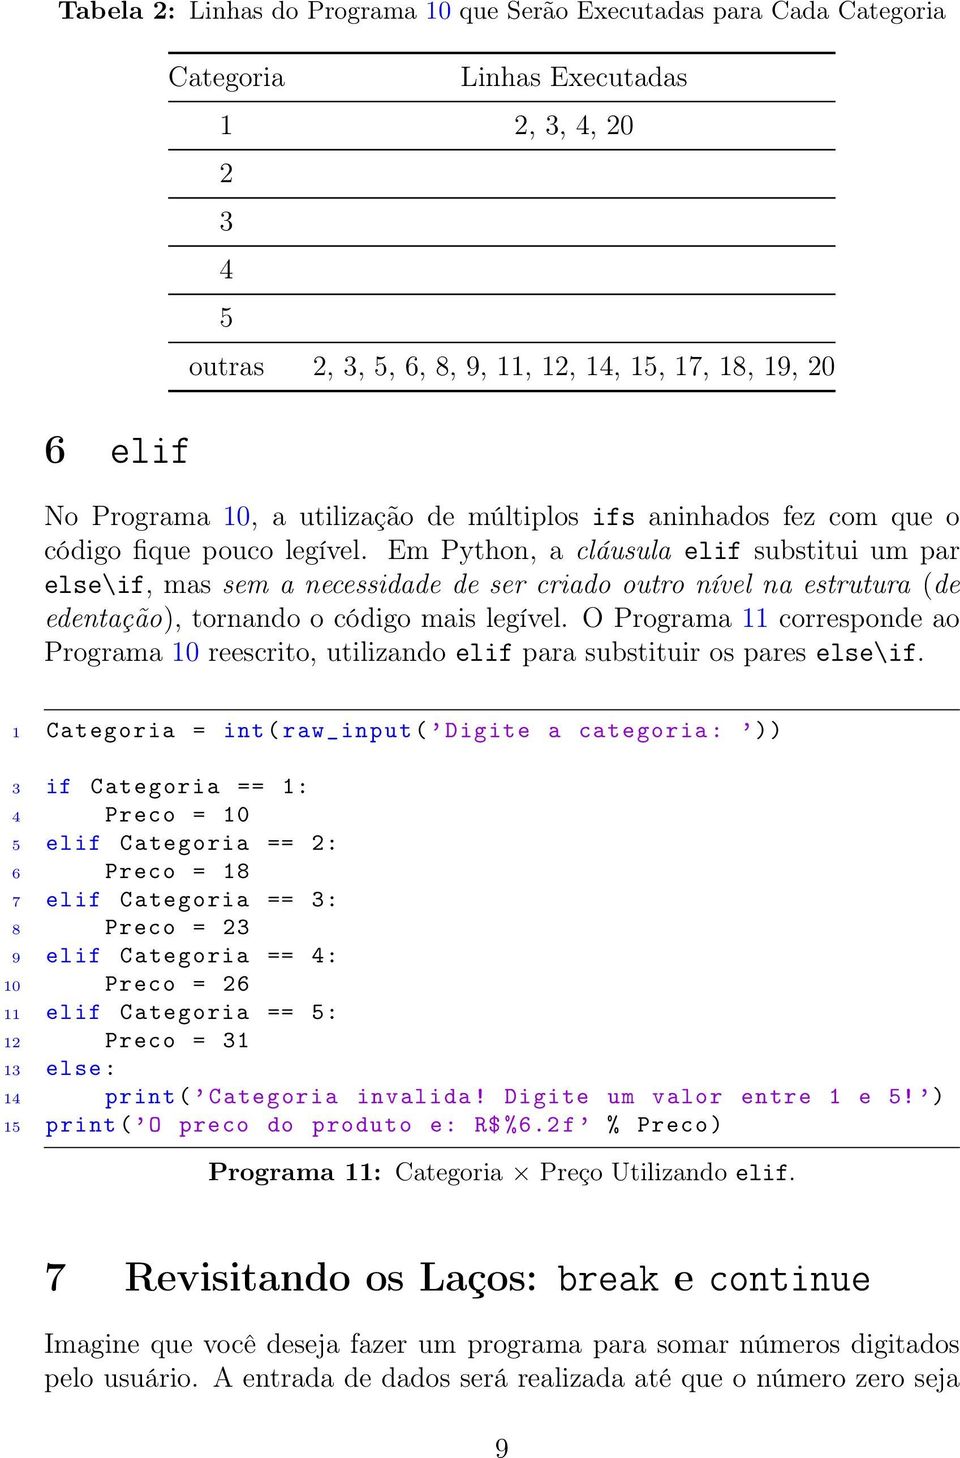 Em Python, a cláusula elif substitui um par else\if, mas sem a necessidade de ser criado outro nível na estrutura (de edentação), tornando o código mais legível.